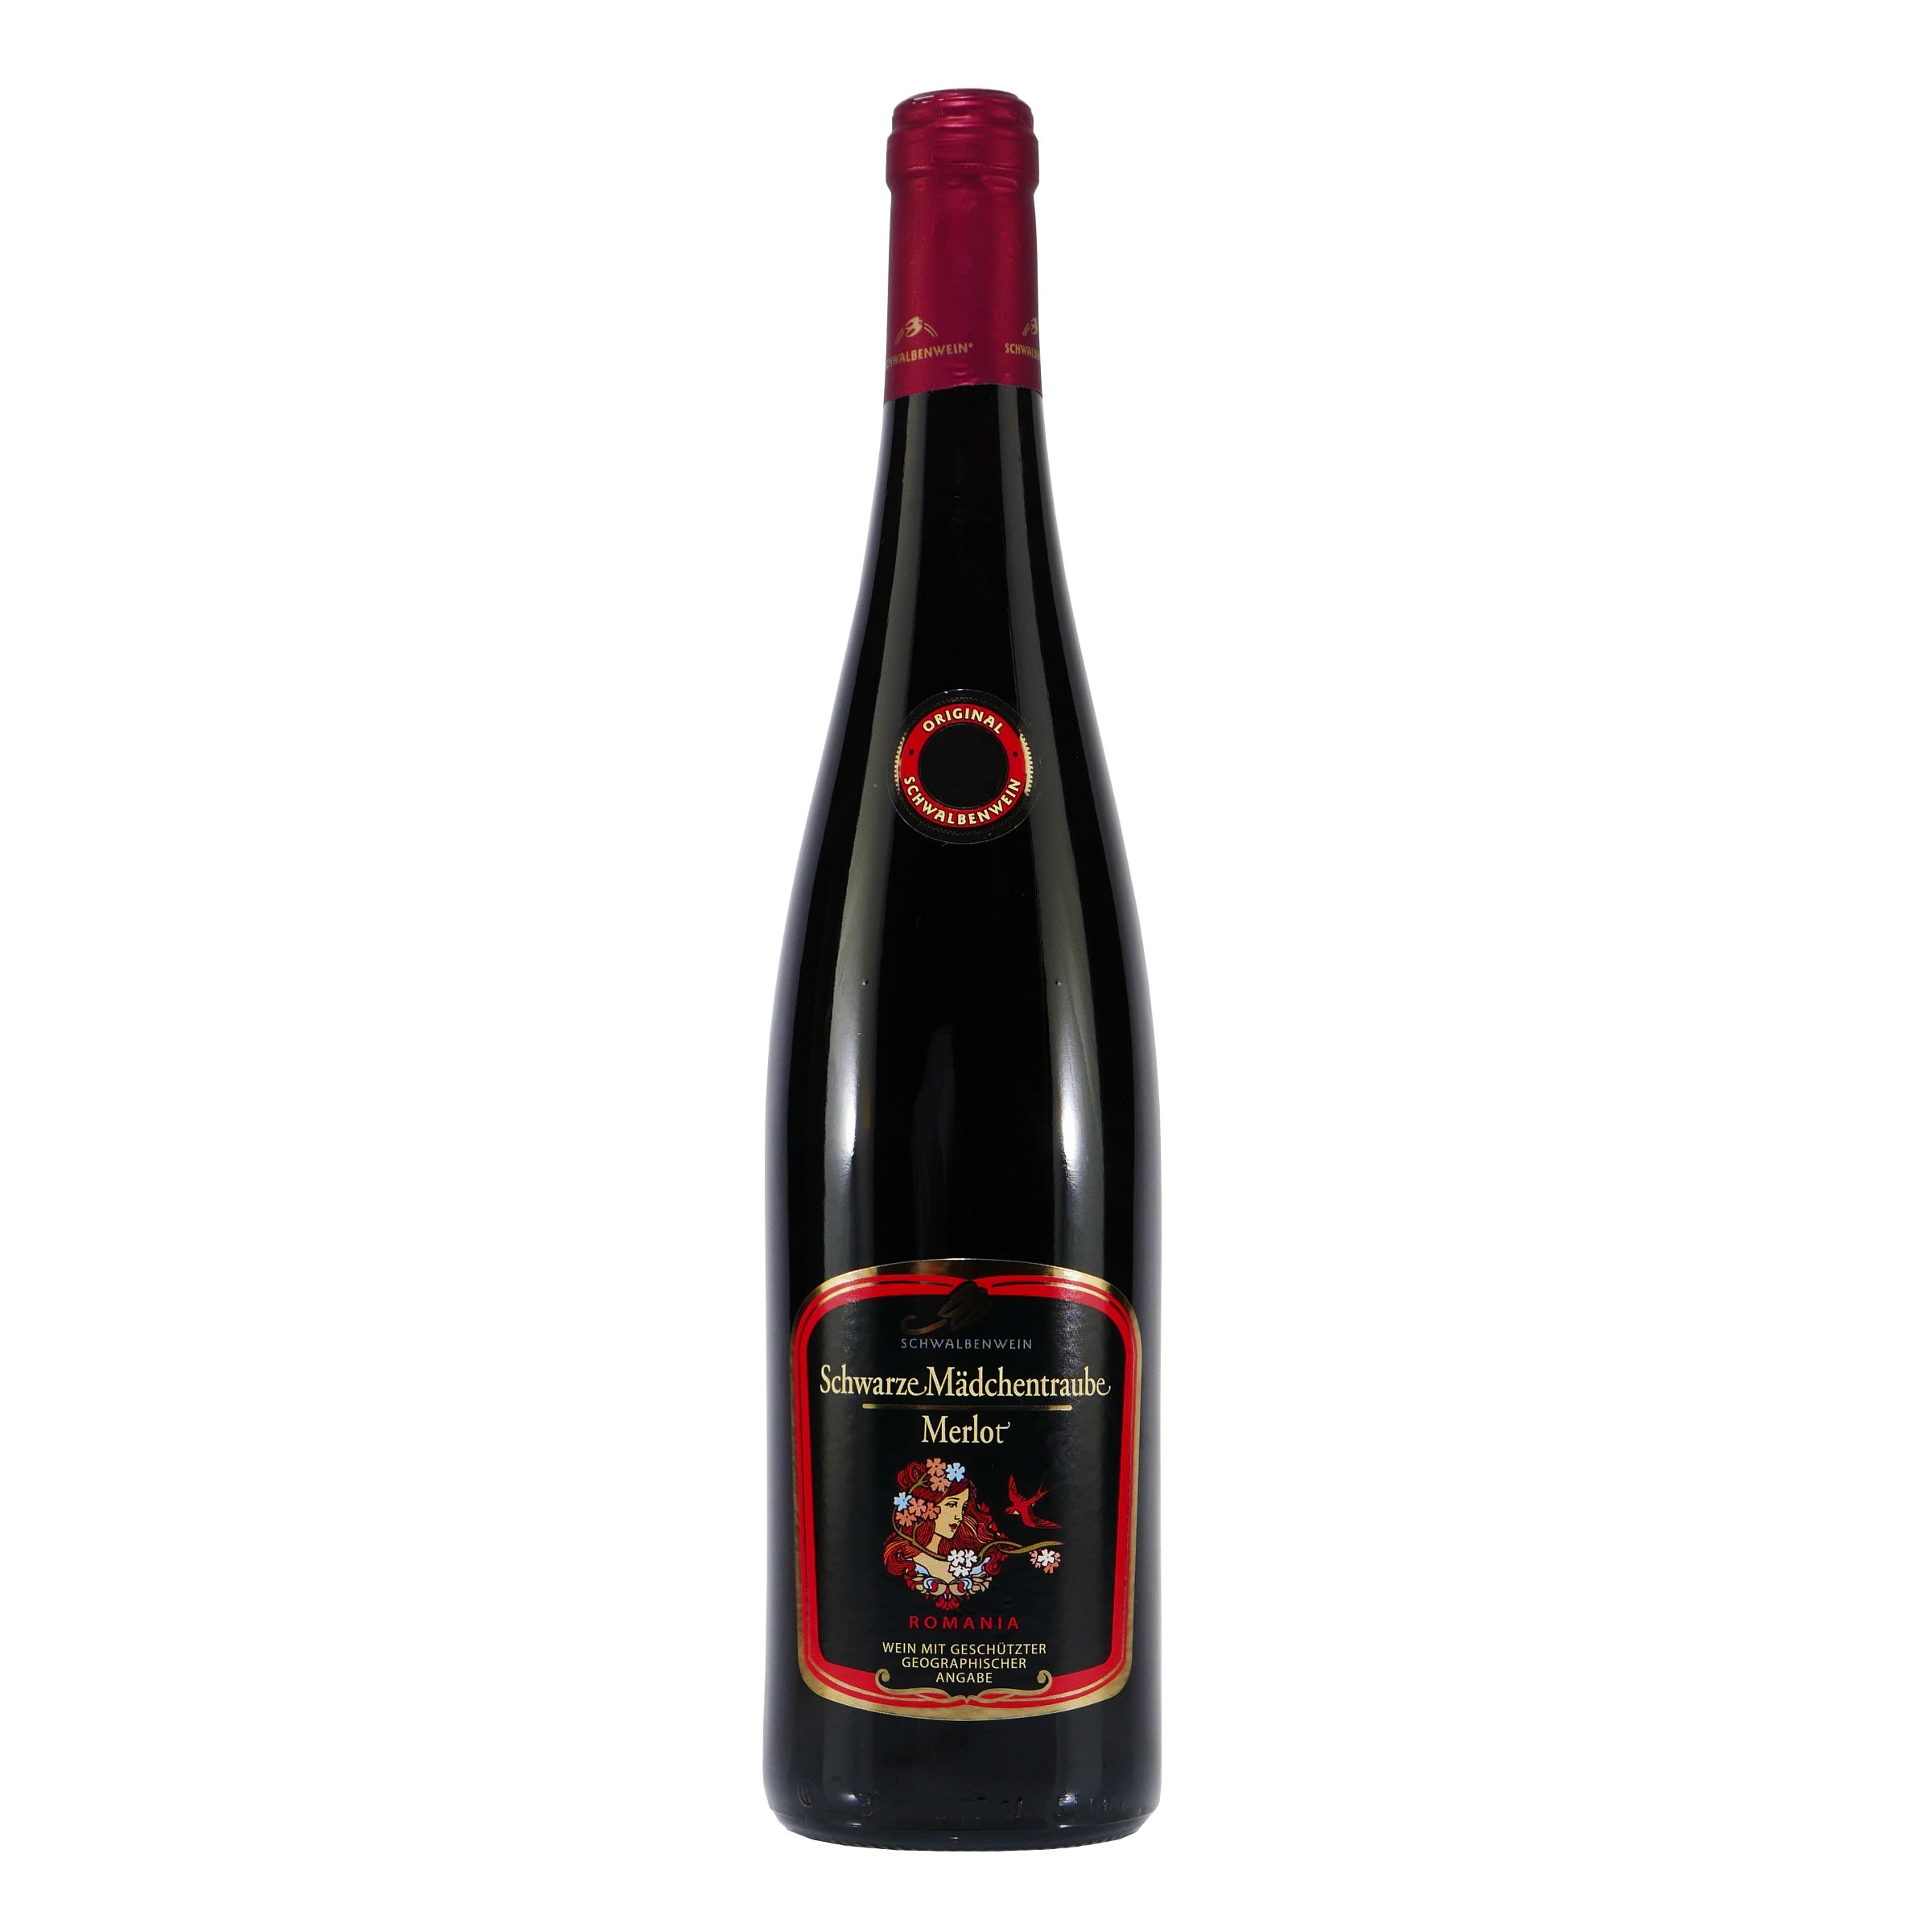 Schwarze Mädchentraube Merlot Rotwein -lieblich- (6 x 0,75L)